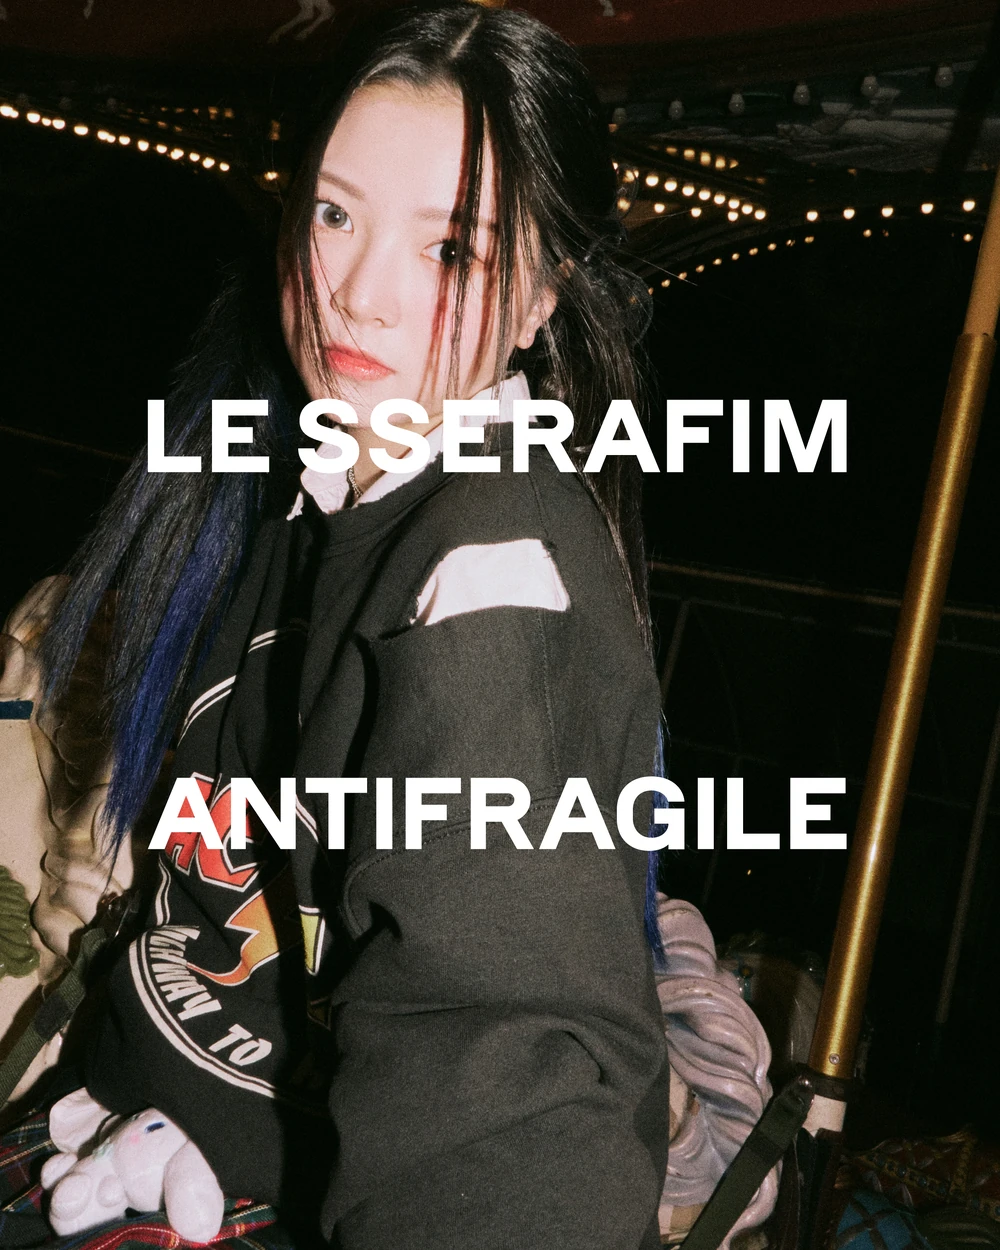 Le Sserafim Antifragile Eunchae Concept Teaser Picture Image Photo Kpop K-Concept 11